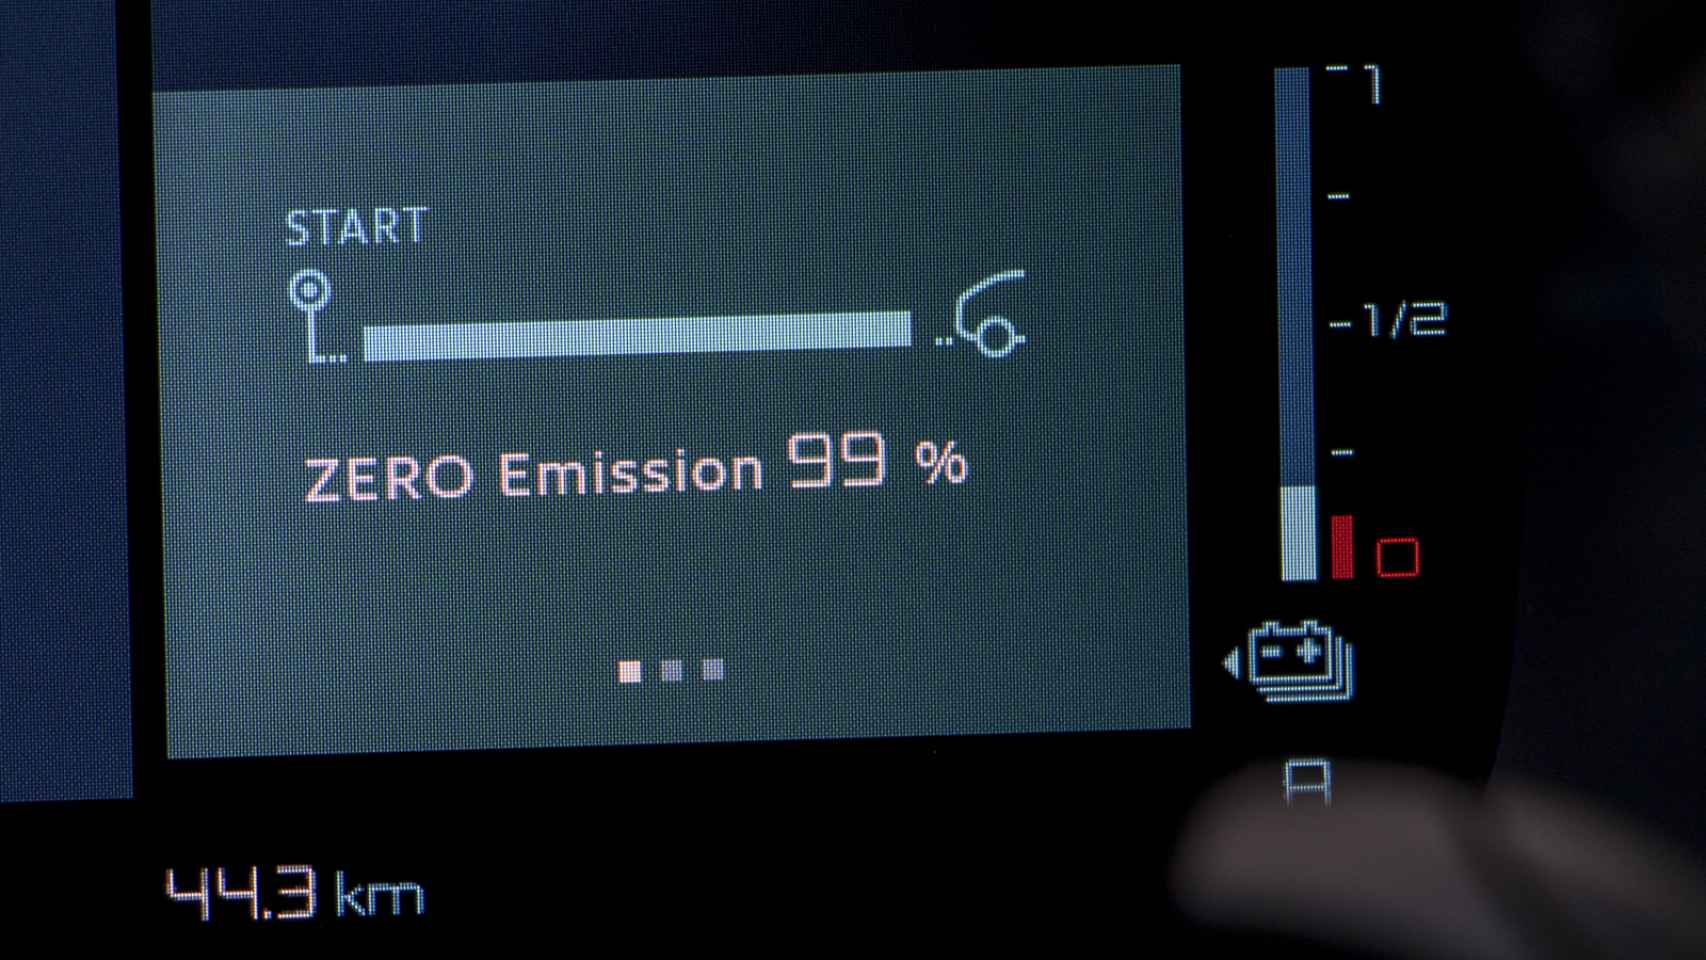 Nuestro trayecto fue casi al 100% de emisiones cero.